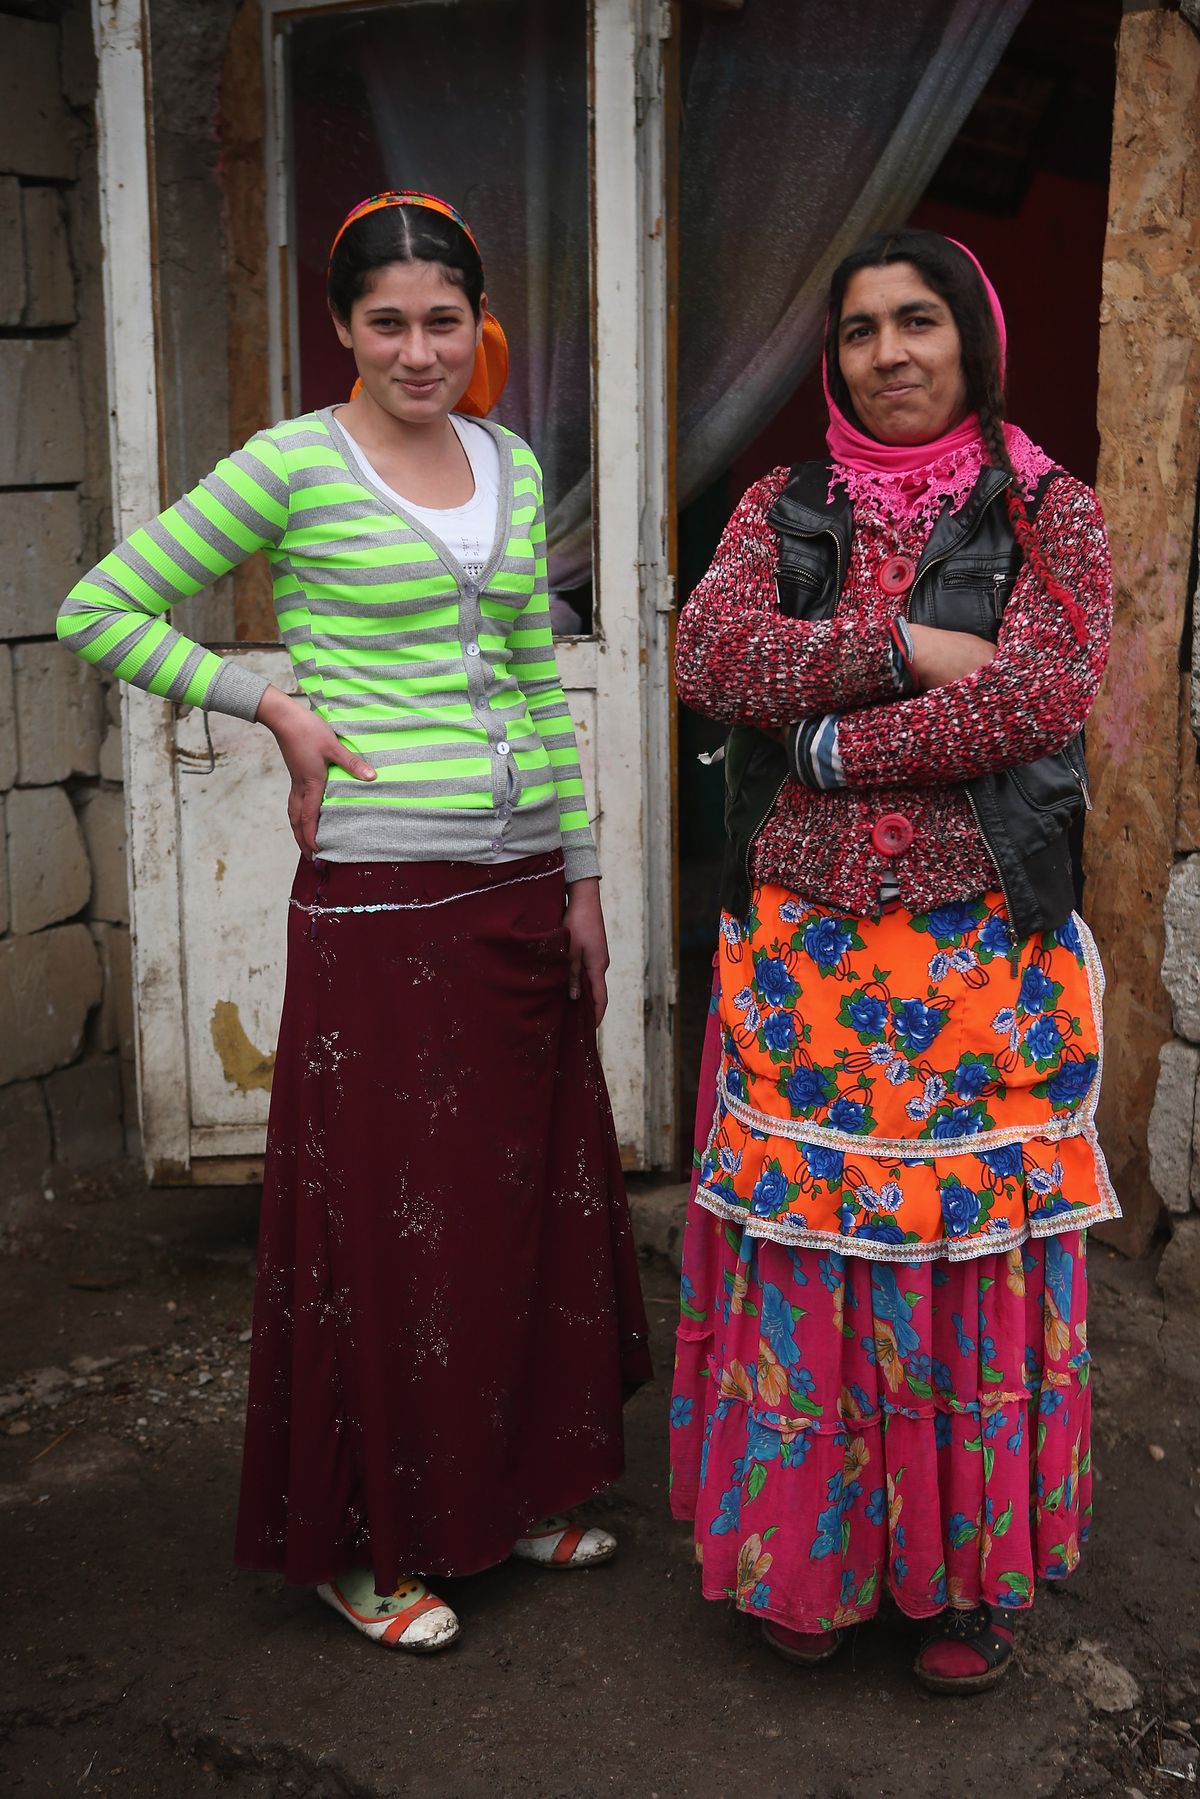 Les `` Gypsy Sisters '' pourraient ne pas montrer toute la culture